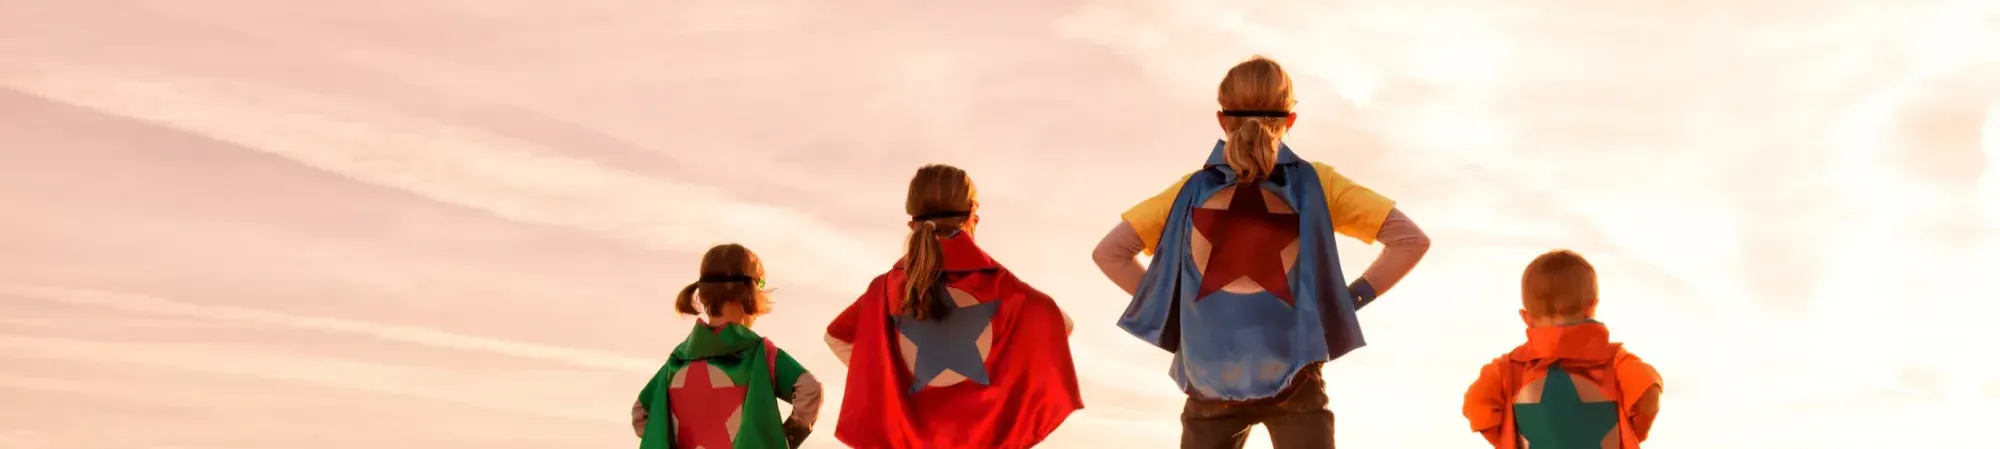 vier kinderen op een rijtje als superhelden. Ze hebben allemaal een cape om met verschillende kleuren en een ster. 